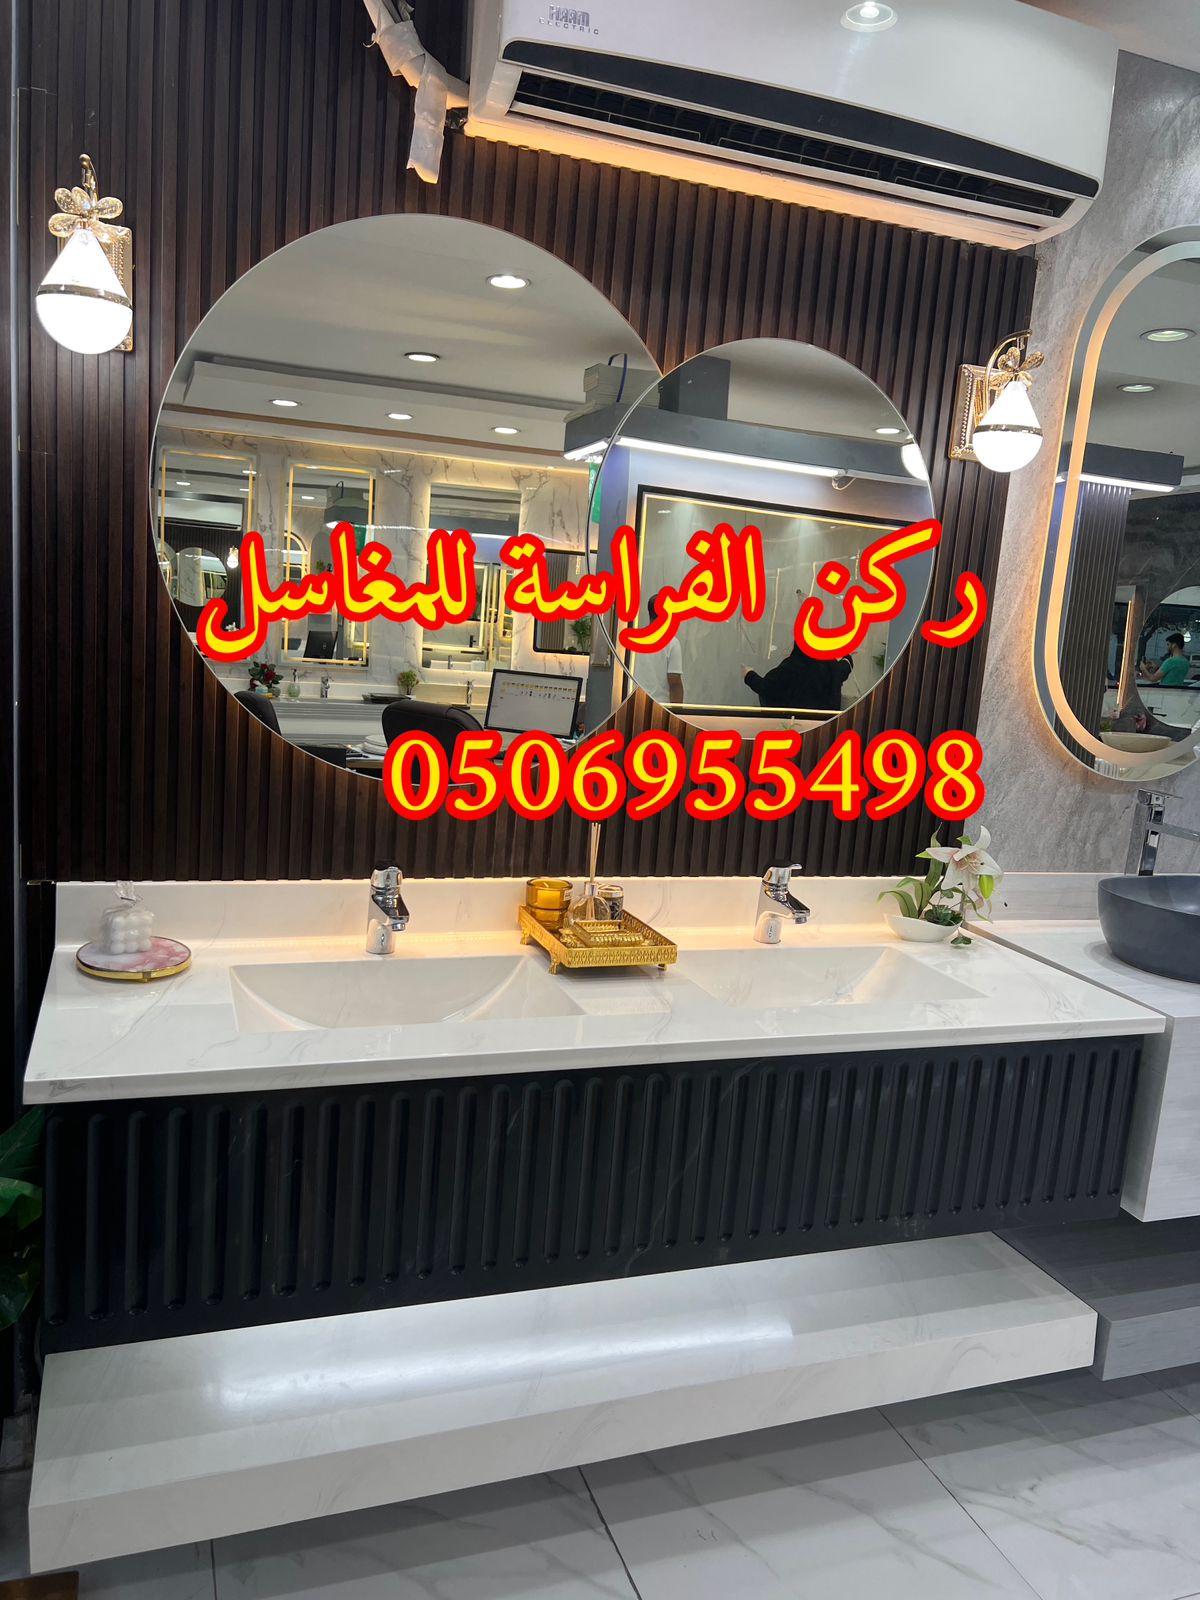 تفصيل ديكورات مغاسل حمامات رخام في الرياض,0506955498 539135112